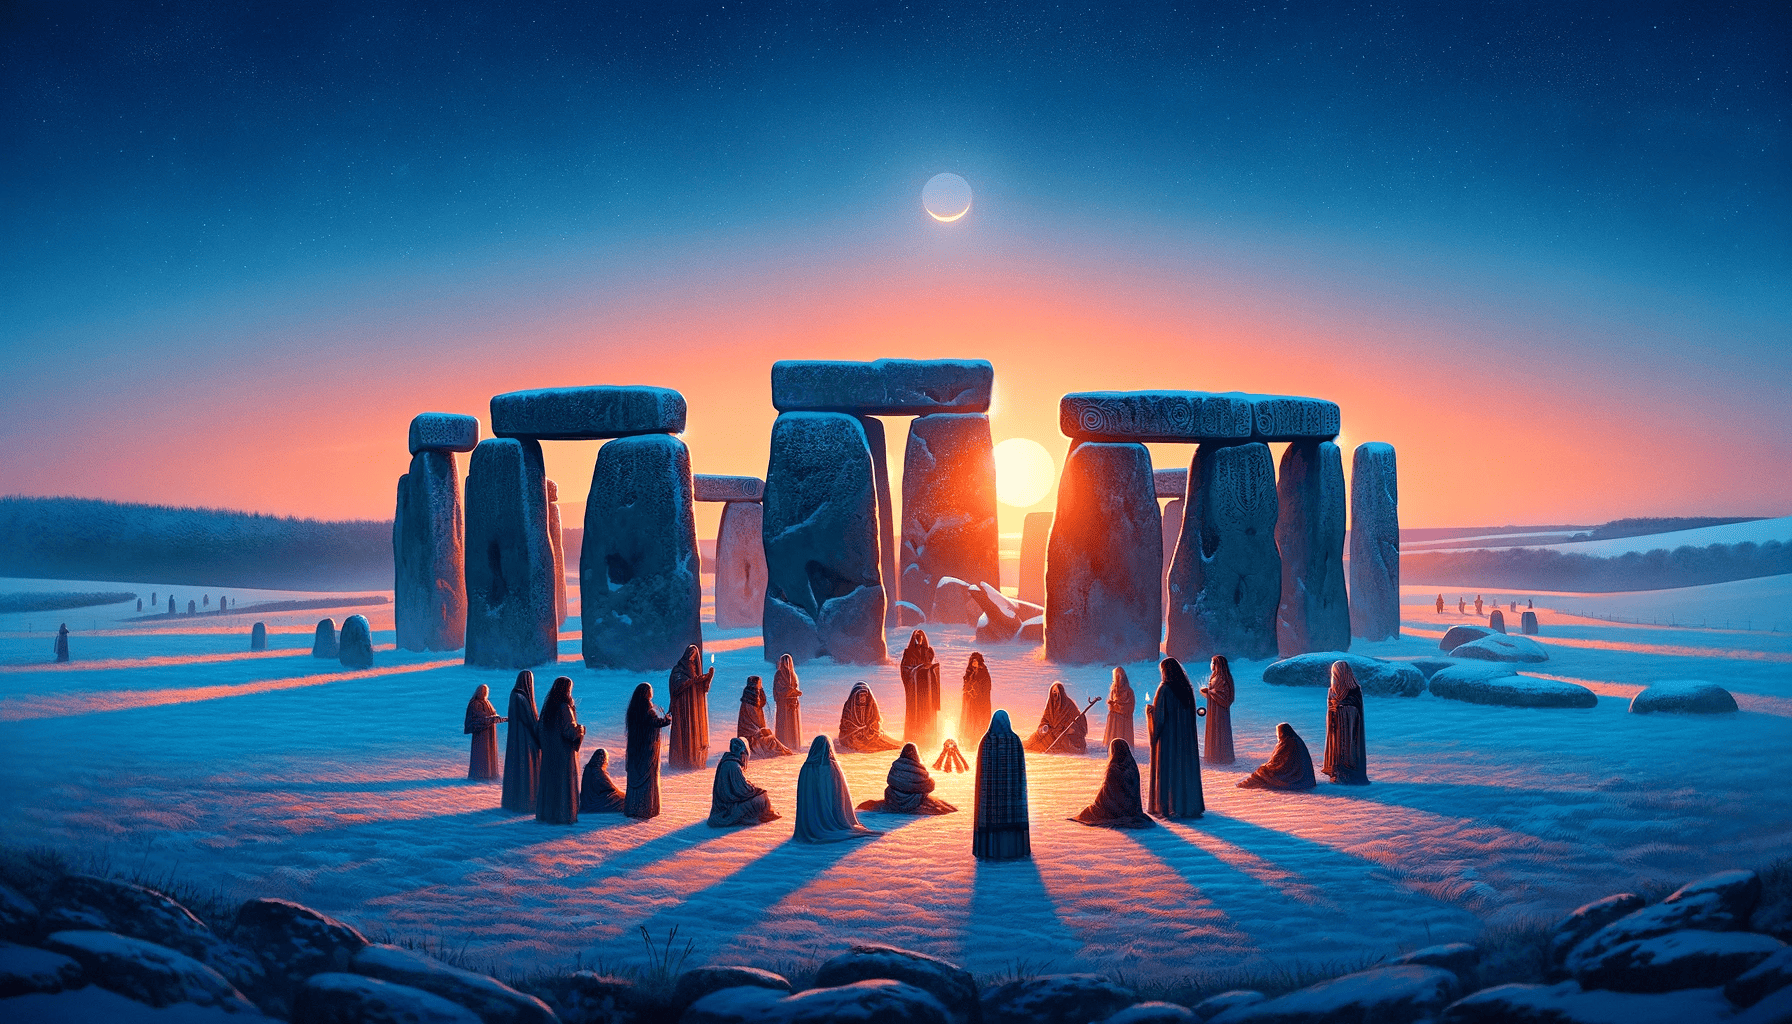 druidic celebration stonehenge